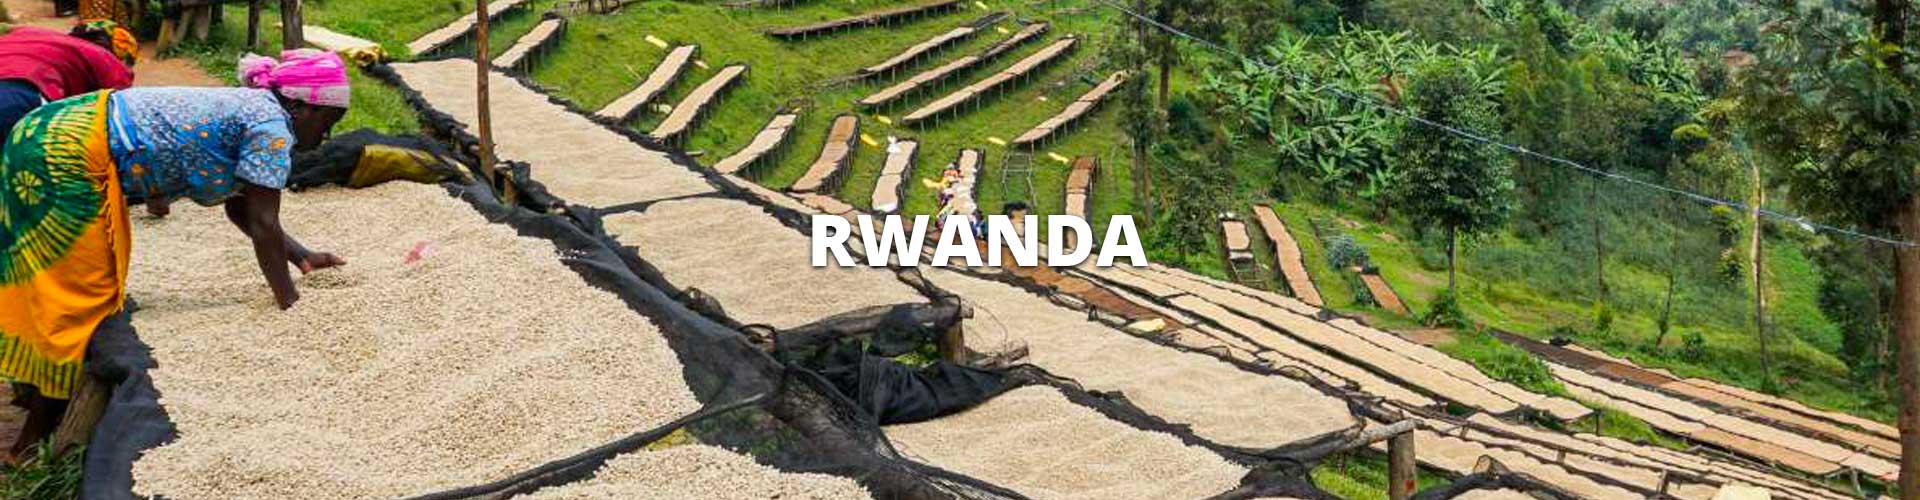 rwanda-header